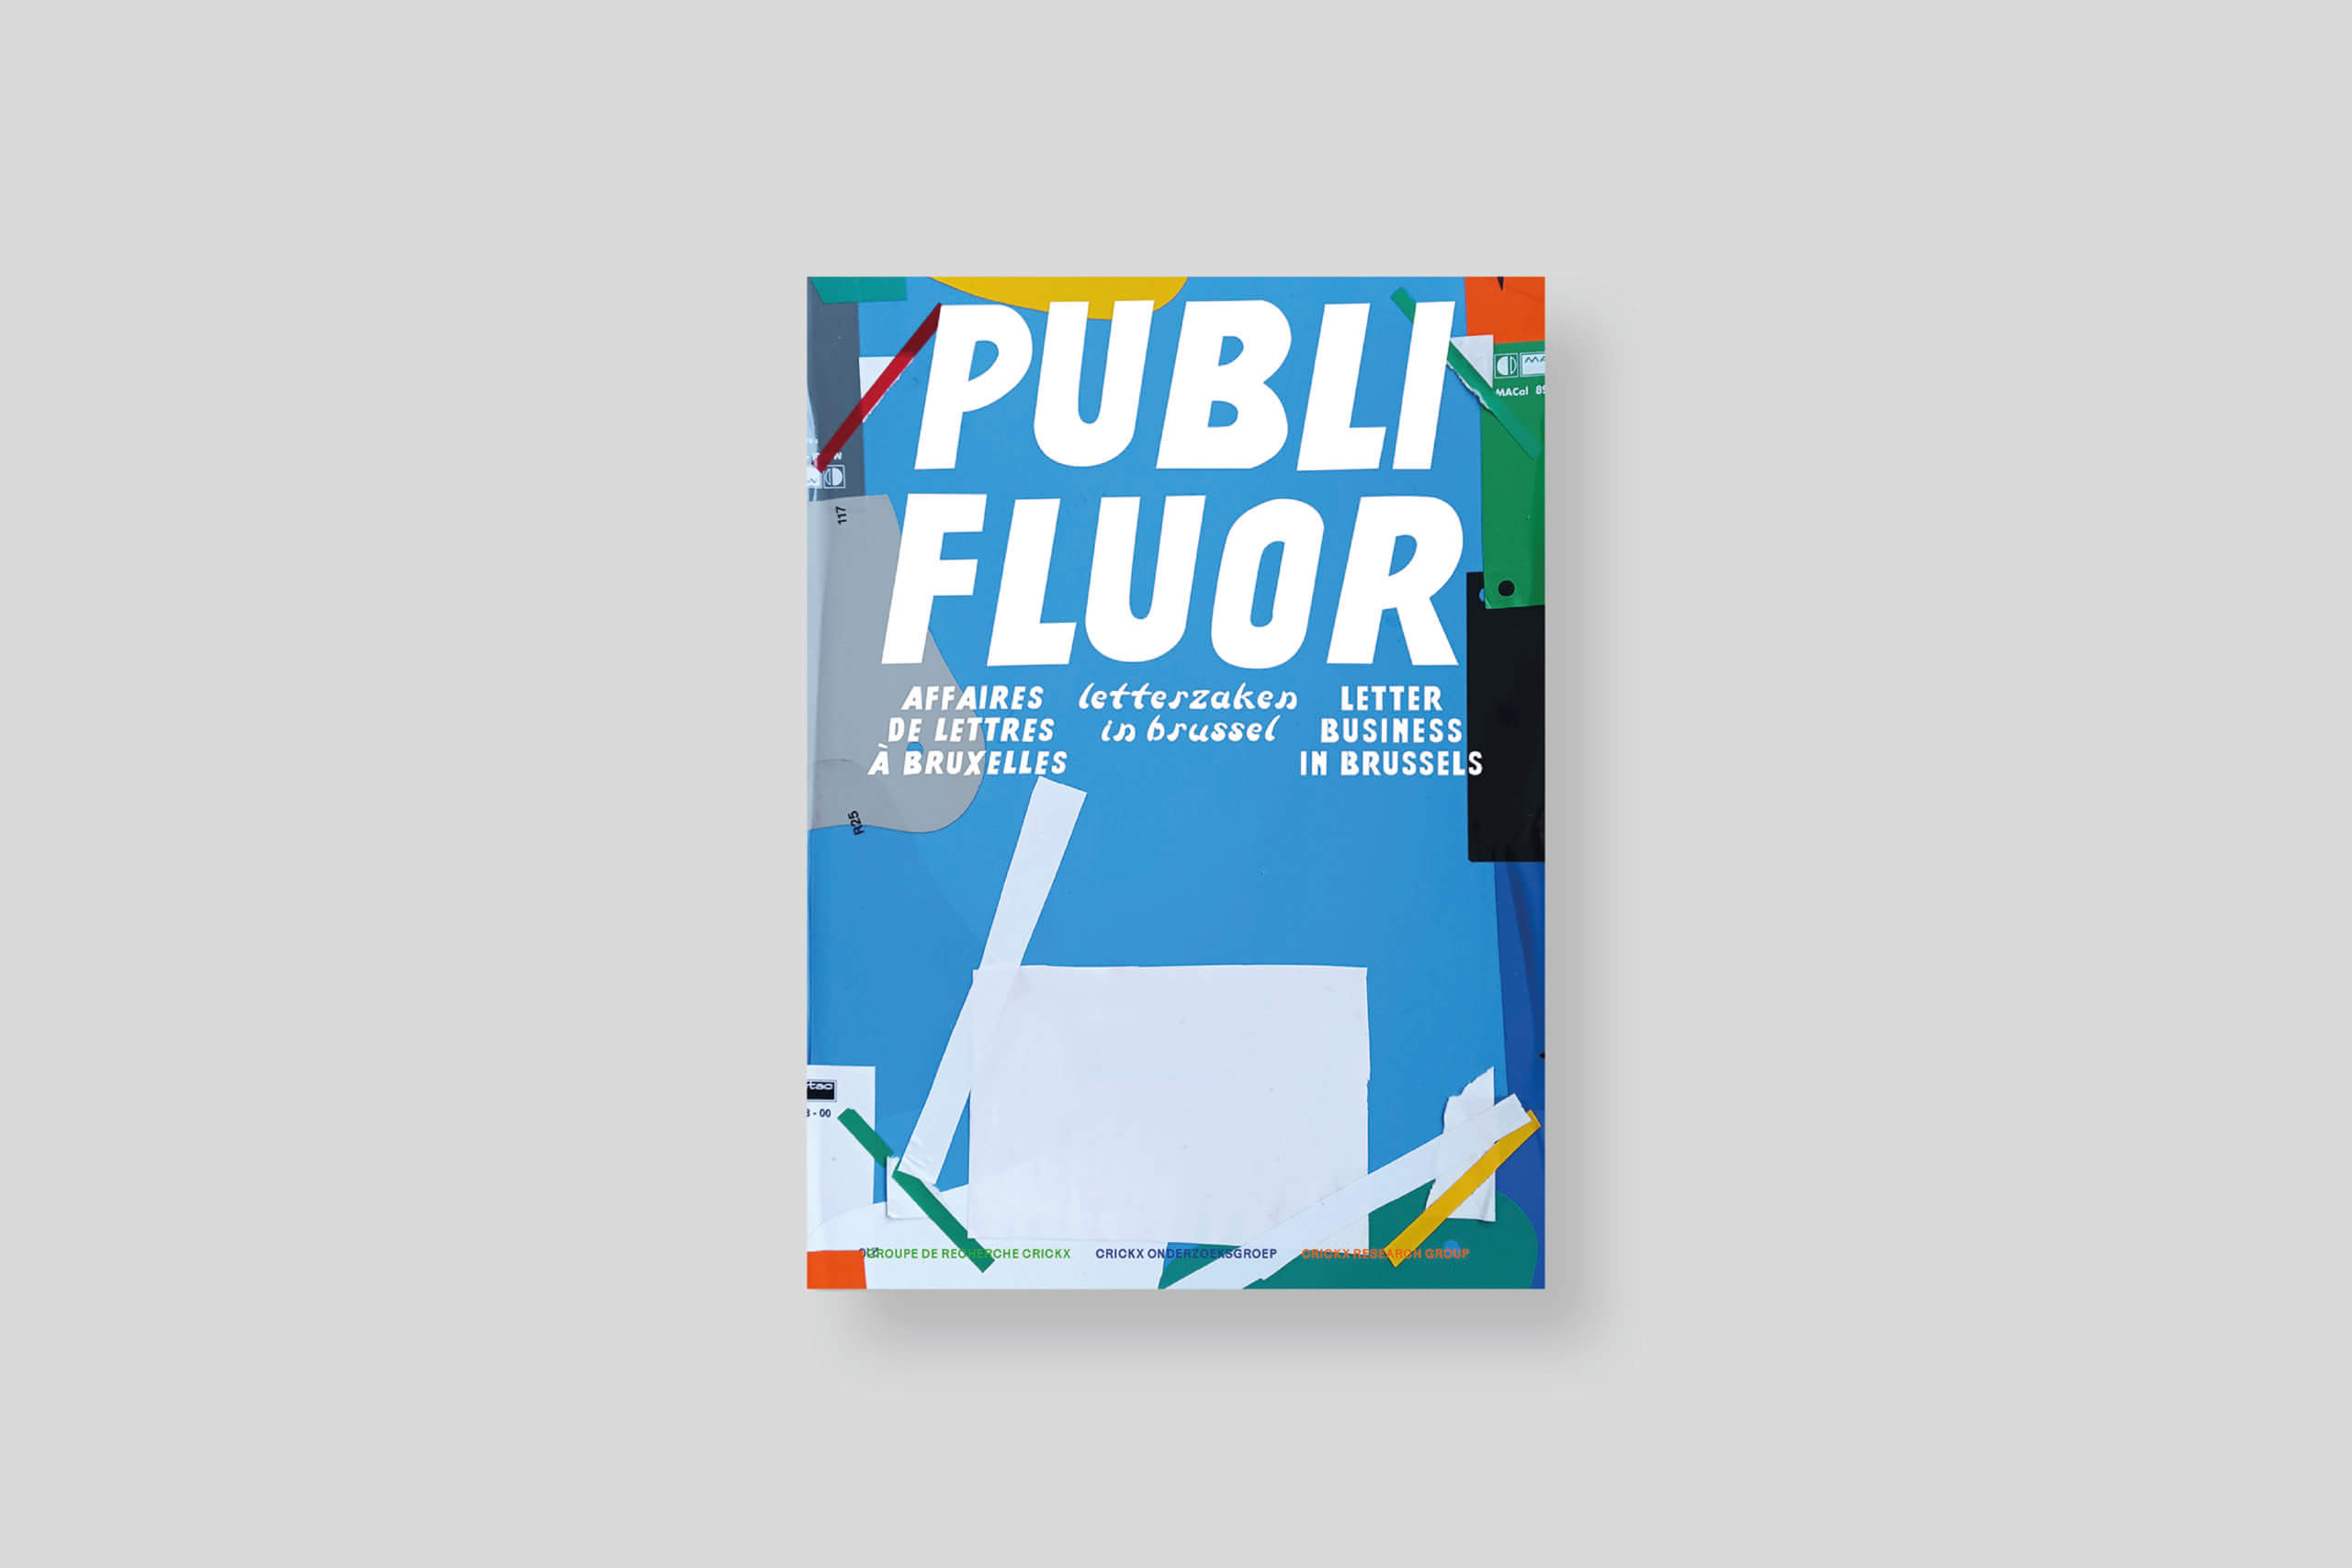 publi-fluor-affaire-lettres-bruxelles-crickx-research-group-surfaces-utiles-cover